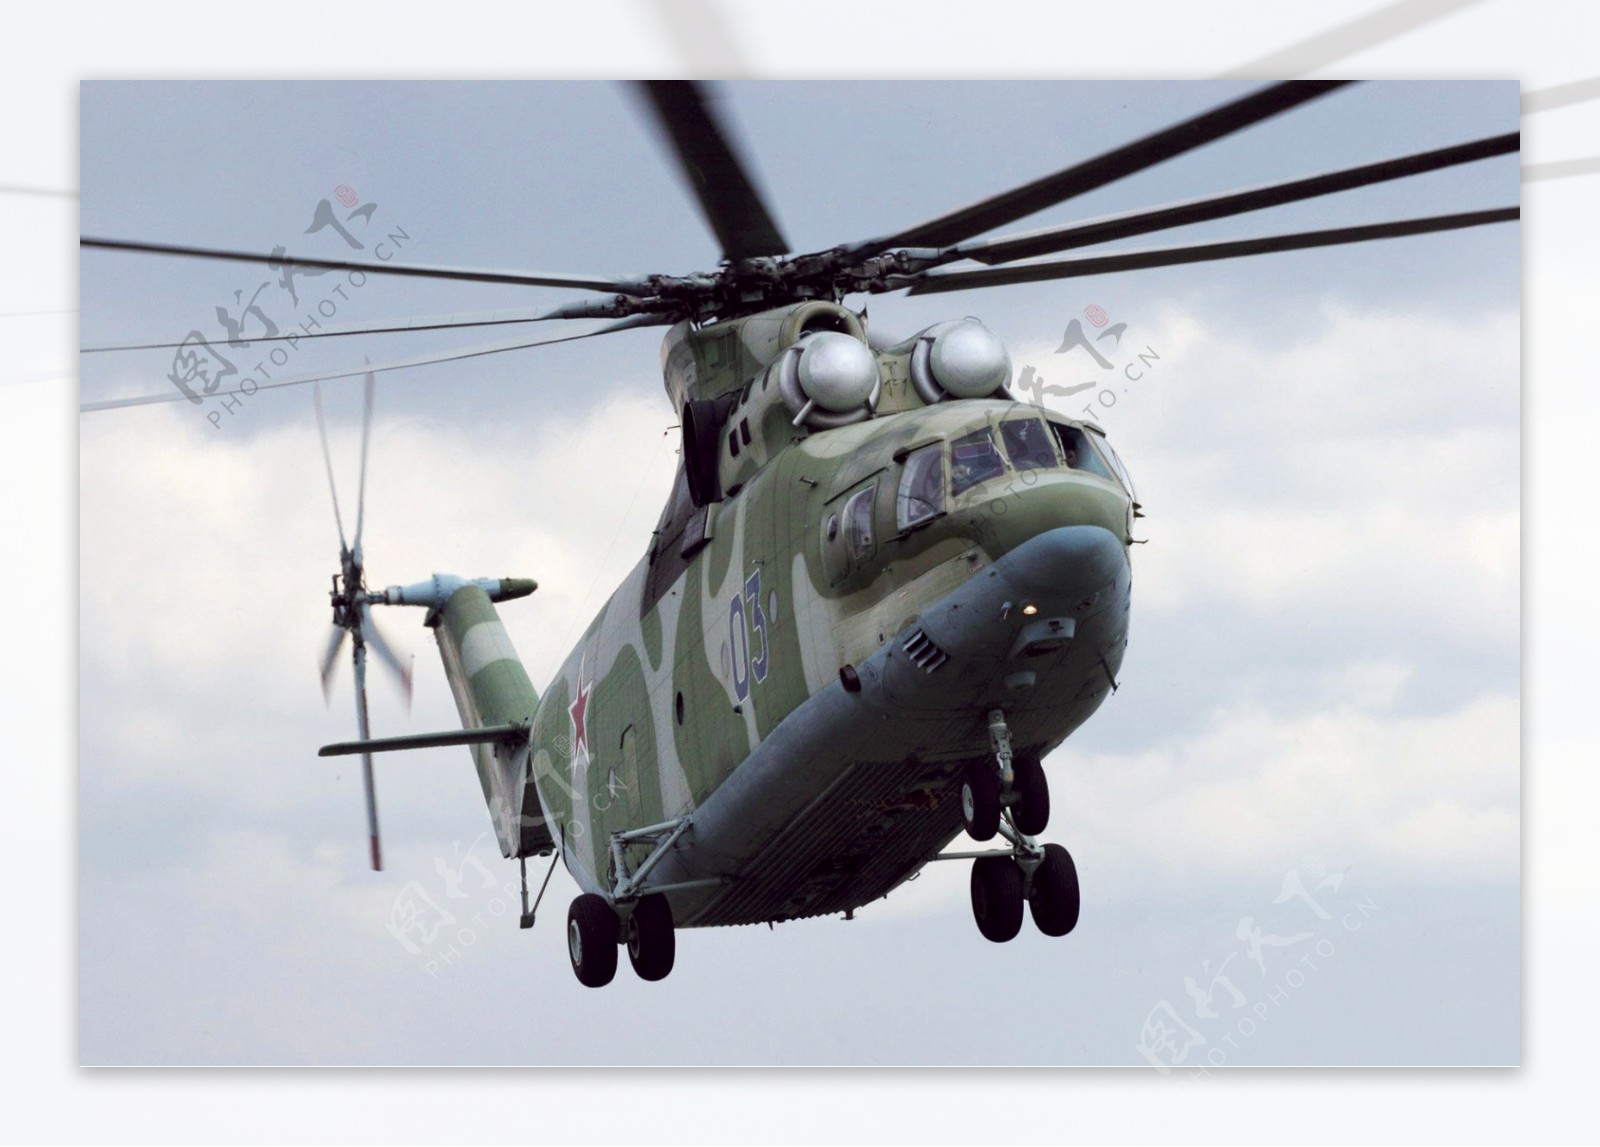 俄罗斯米26重型直升机前侧位图片